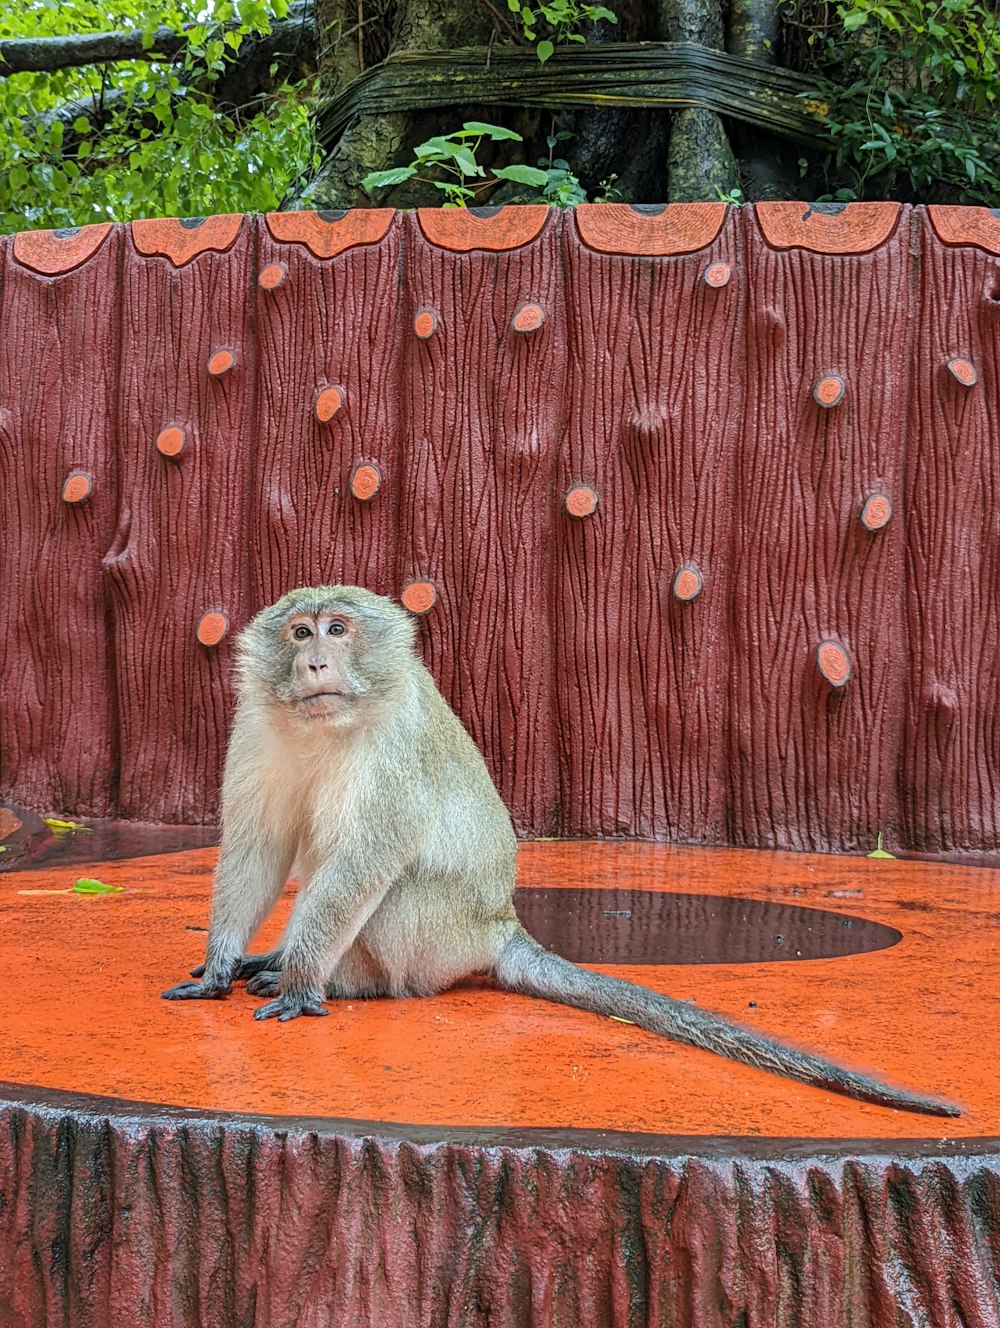 Un mono sentado encima de una plataforma naranja